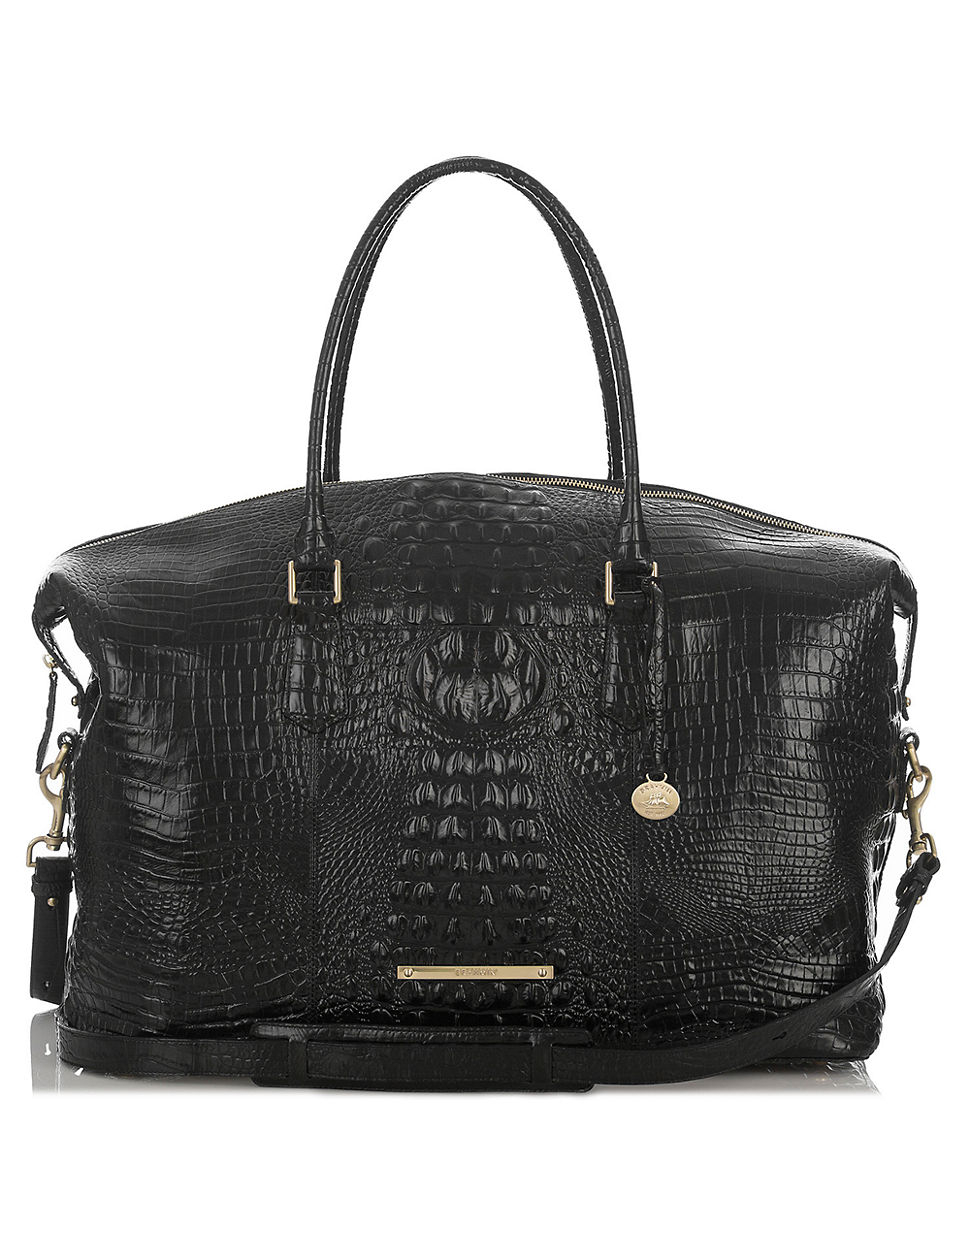 Brahmin Duxbury Leather Weekender Bag in Black | Lyst